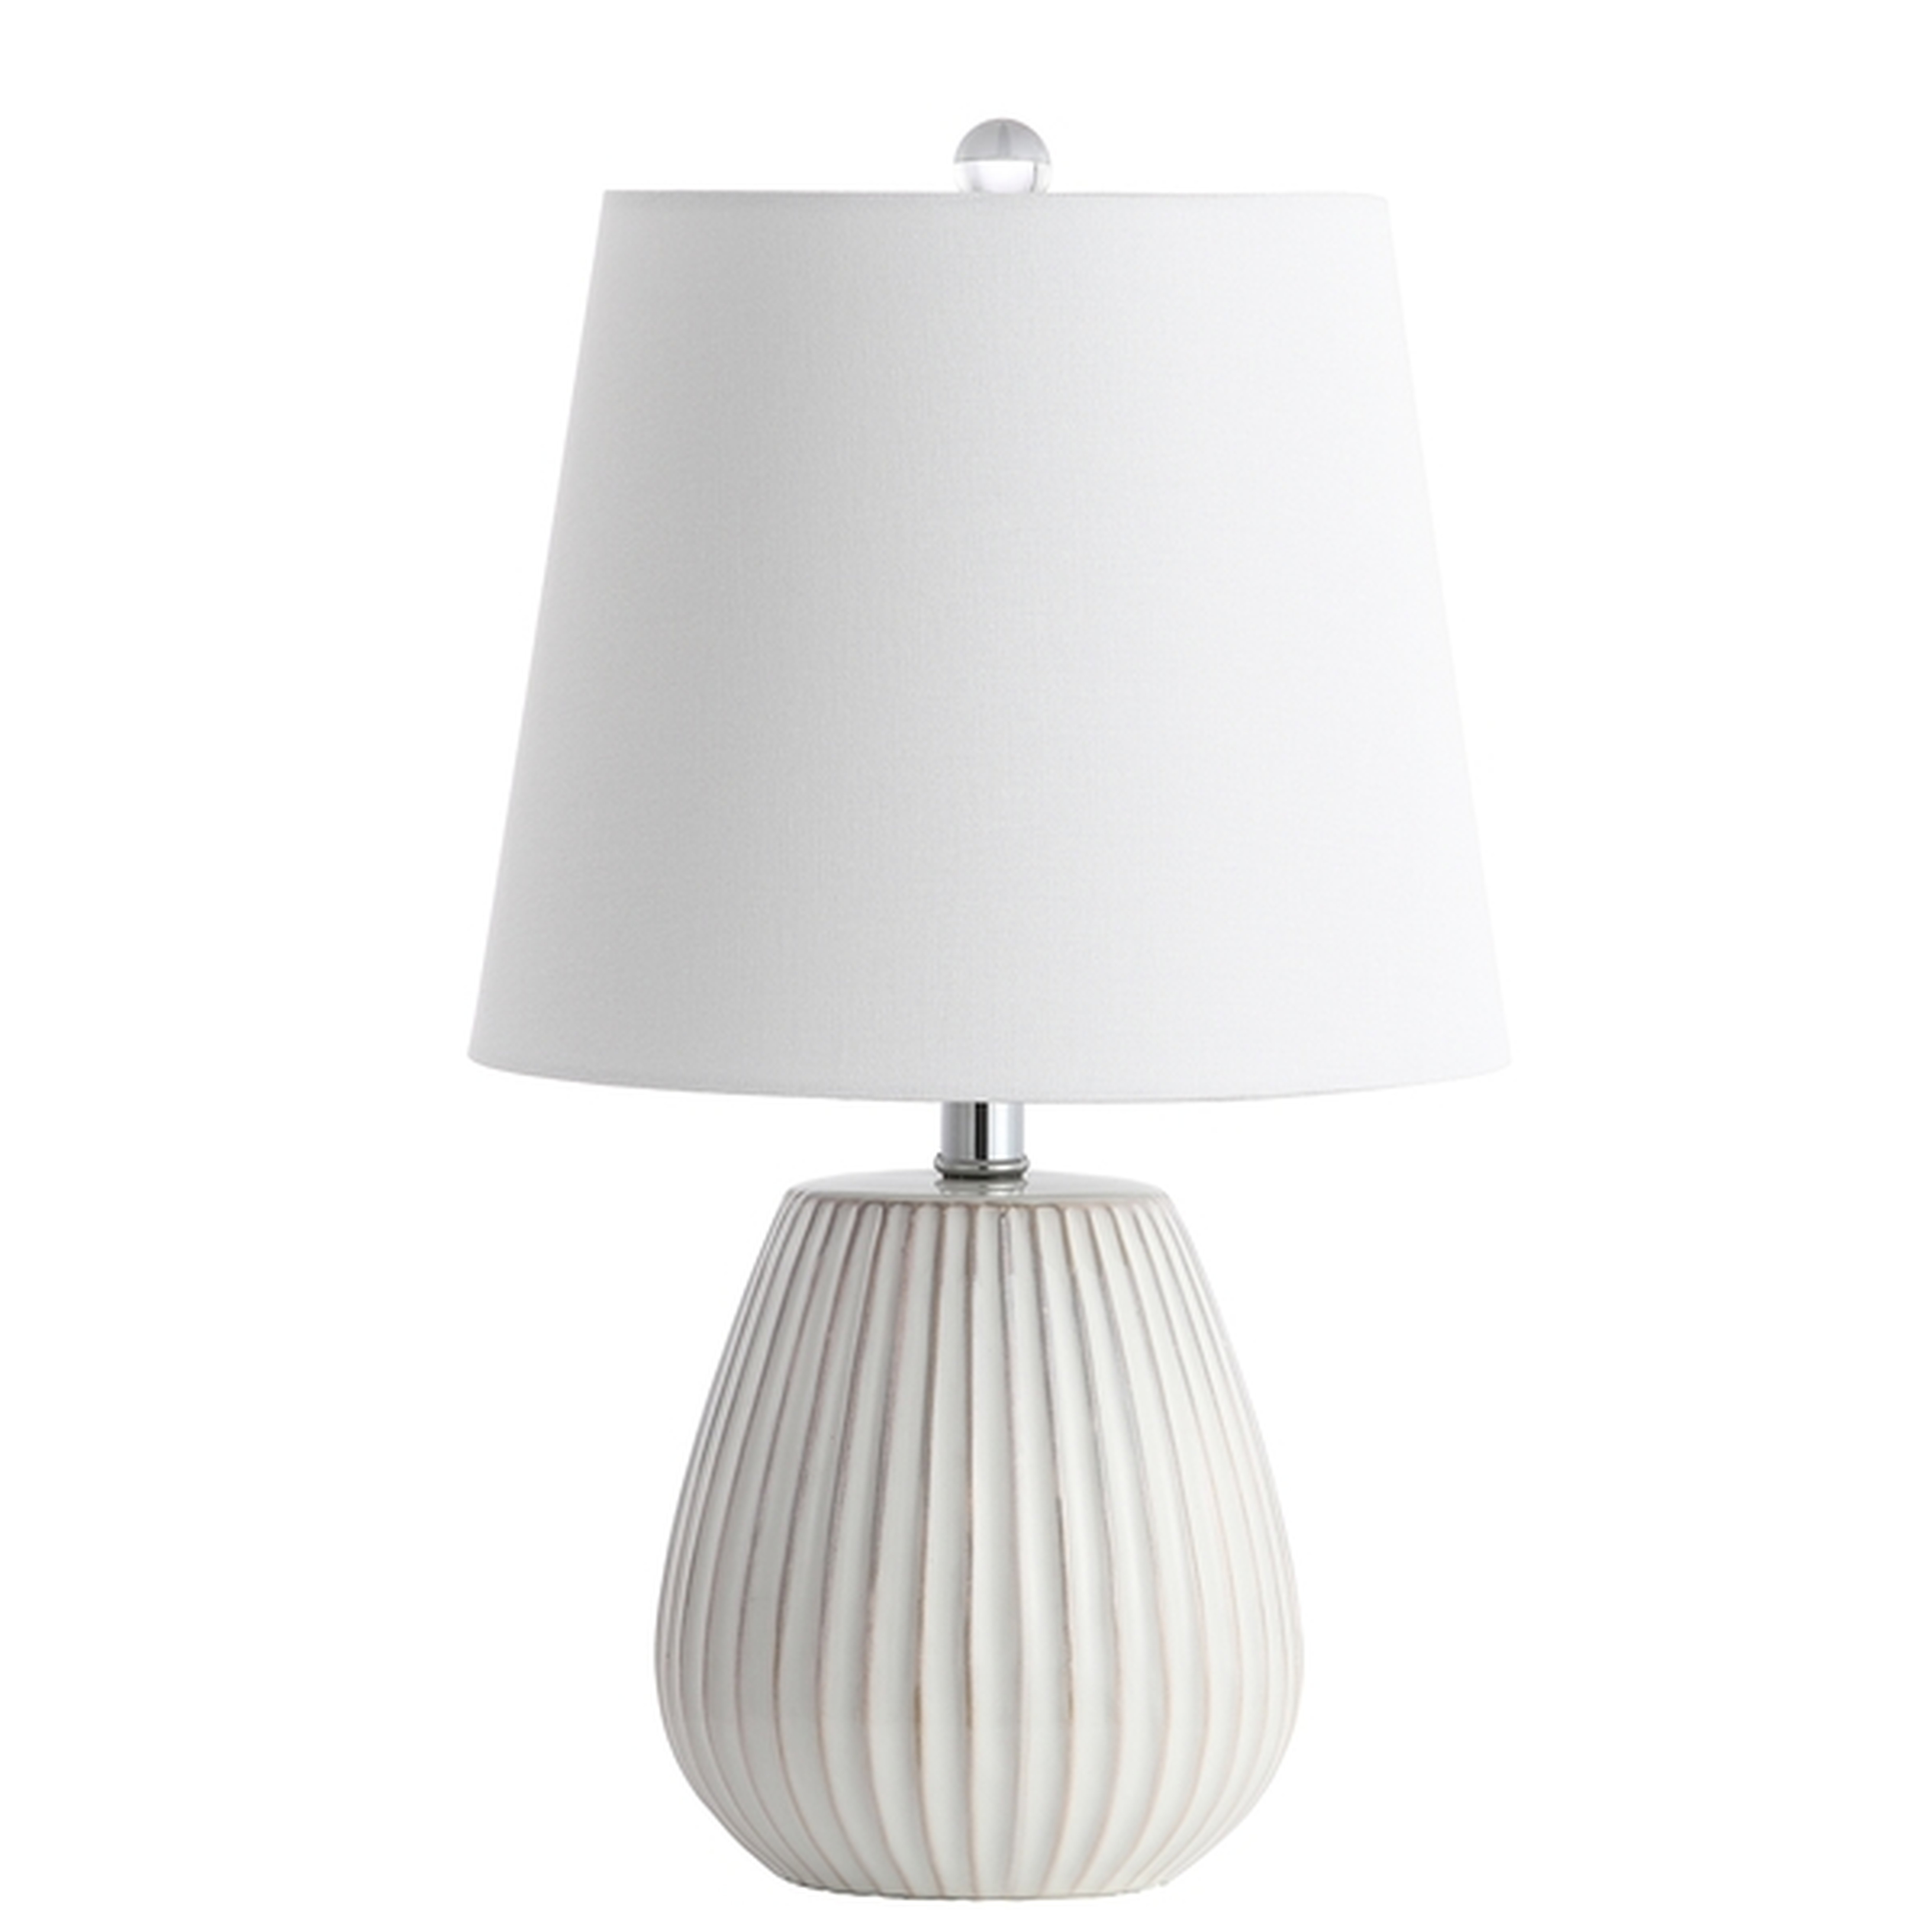 Kole Table Lamp - White - Arlo Home - Arlo Home